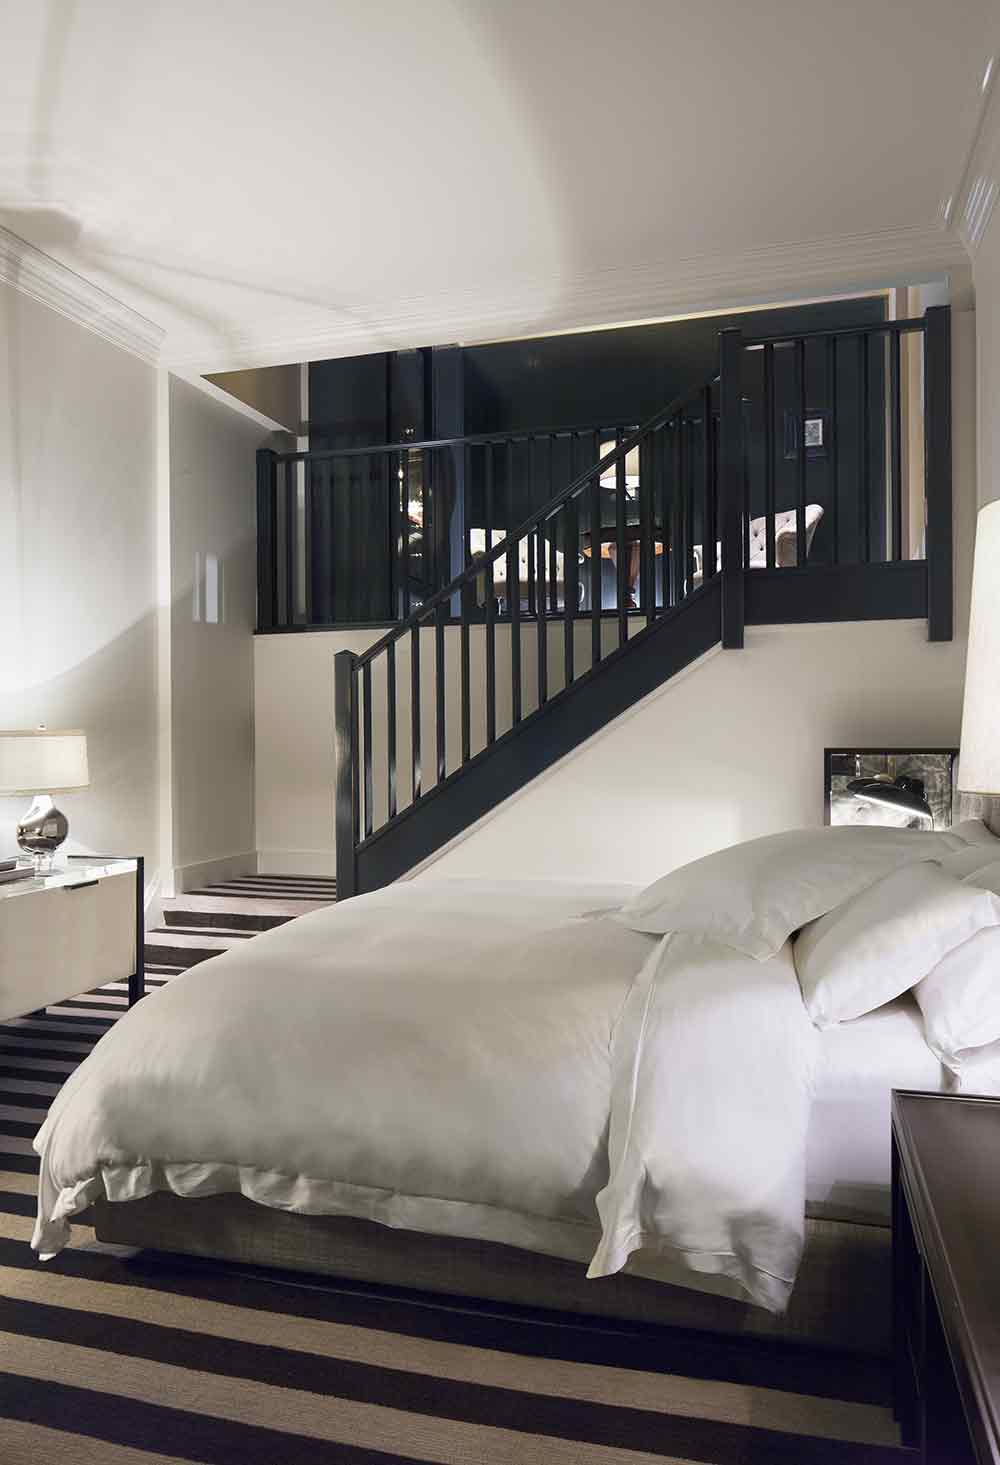 造型简洁的黑色楼梯与整体环境相衬，开放式的卧室格局也体现着新式的时尚。